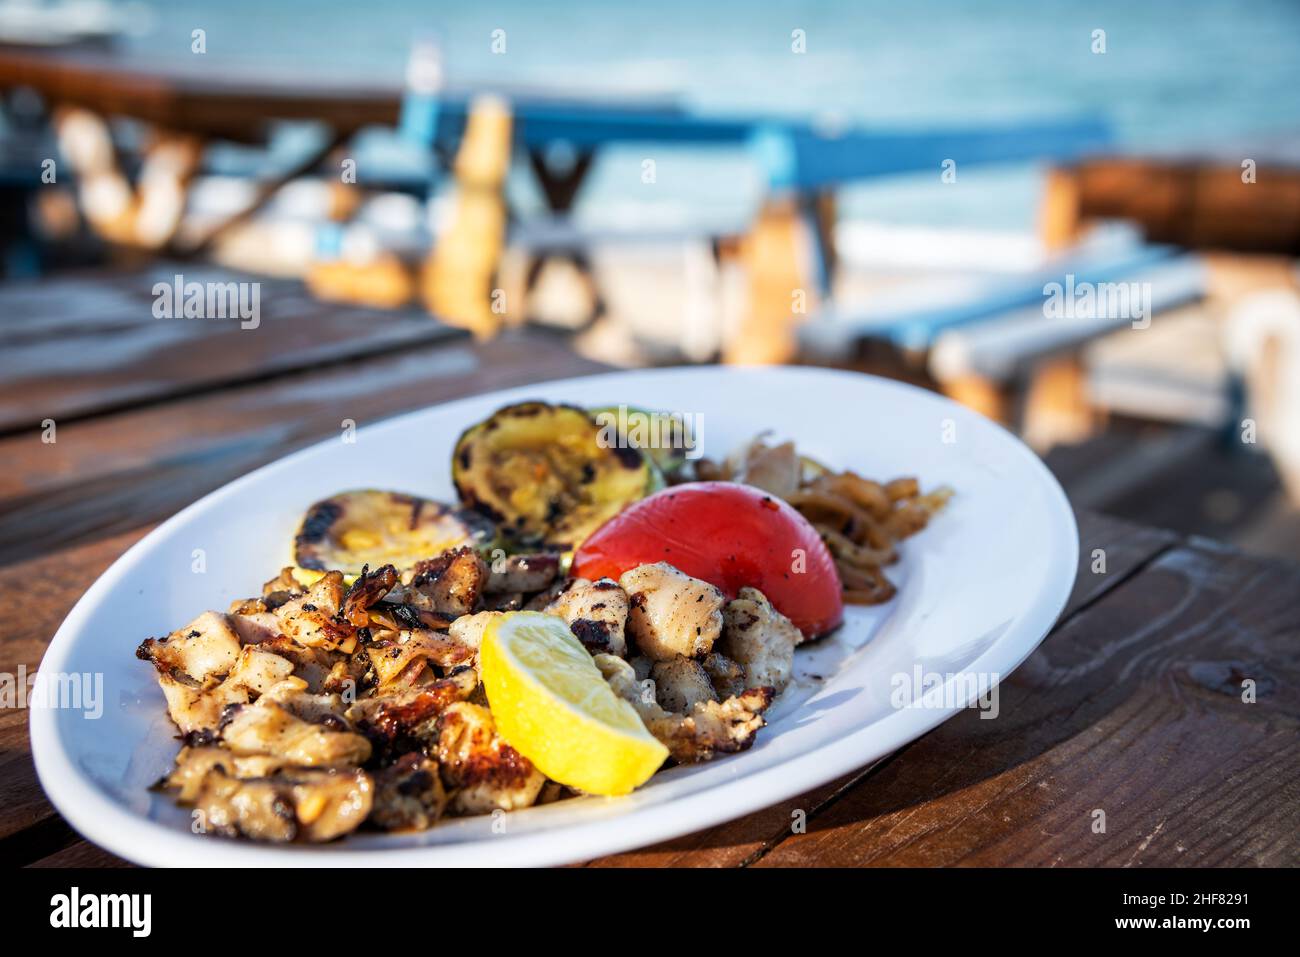 Le restaurant Vama Veche, Roumanie, sert du rapana grillé et des fruits de mer traditionnels roumains sur la mer Noire. Banque D'Images